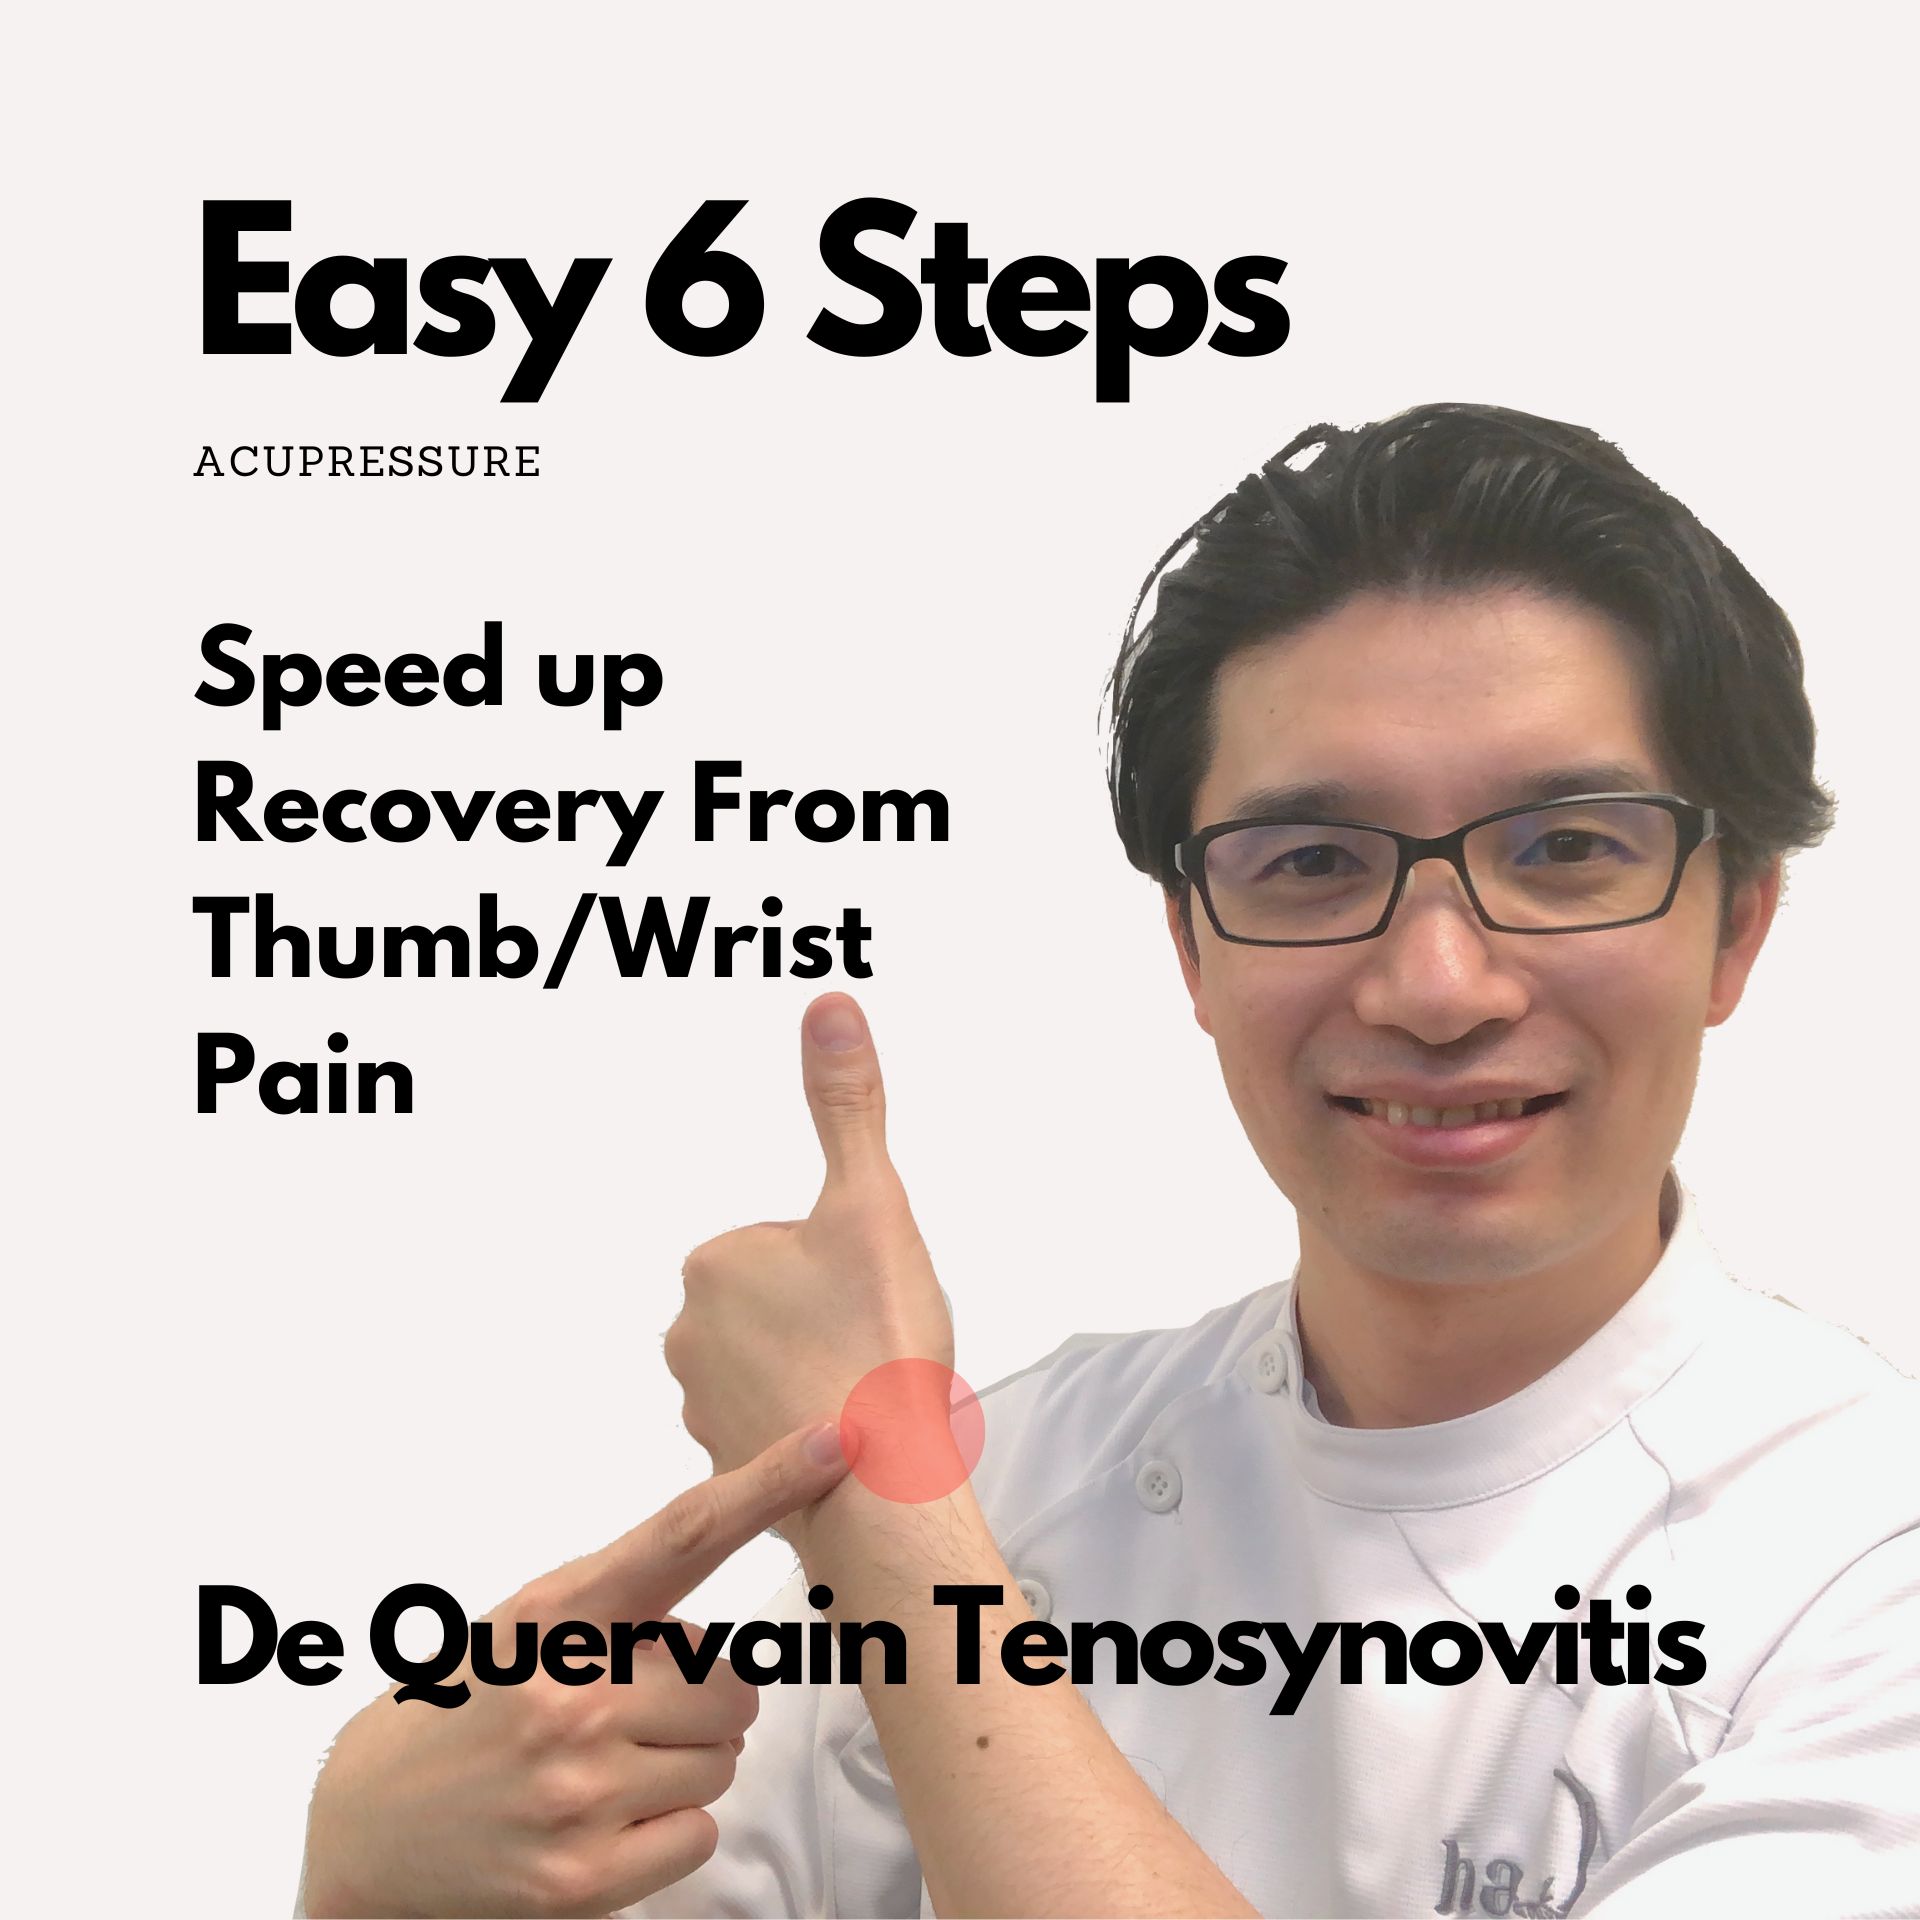 Acupressure Techniques for De Quervain Tenosynovitis